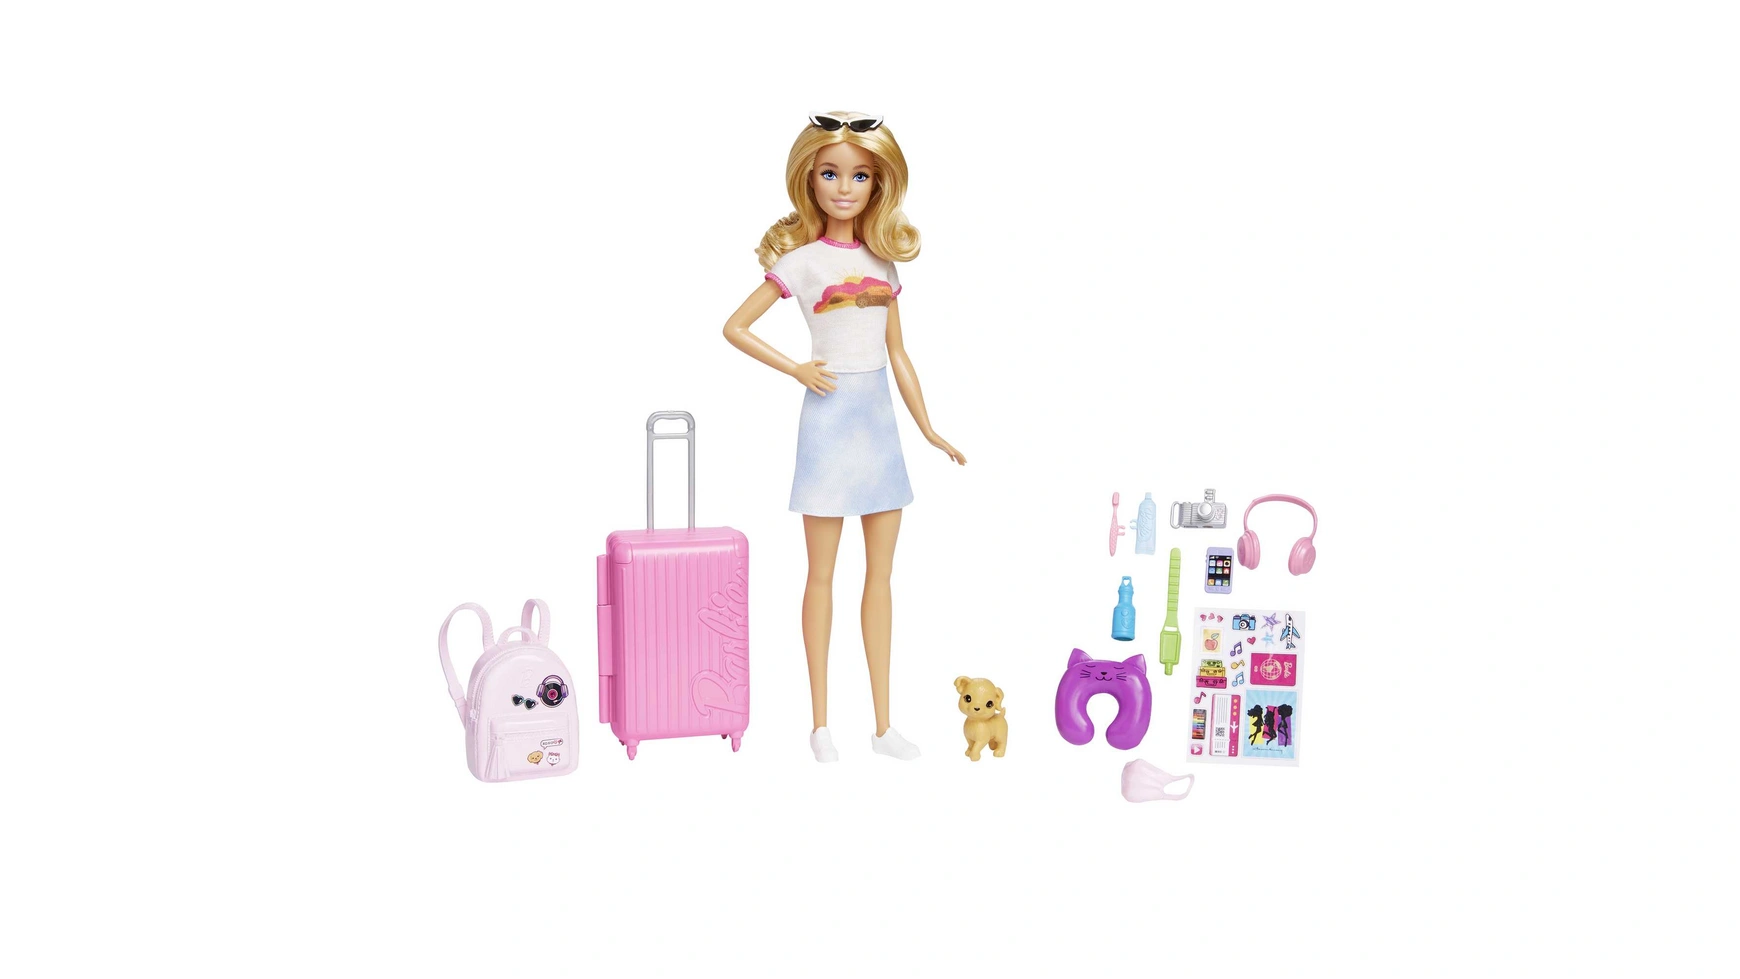 Дорожная кукла Barbie (блондинка), кукла-одевалка с собакой и праздничными аксессуарами